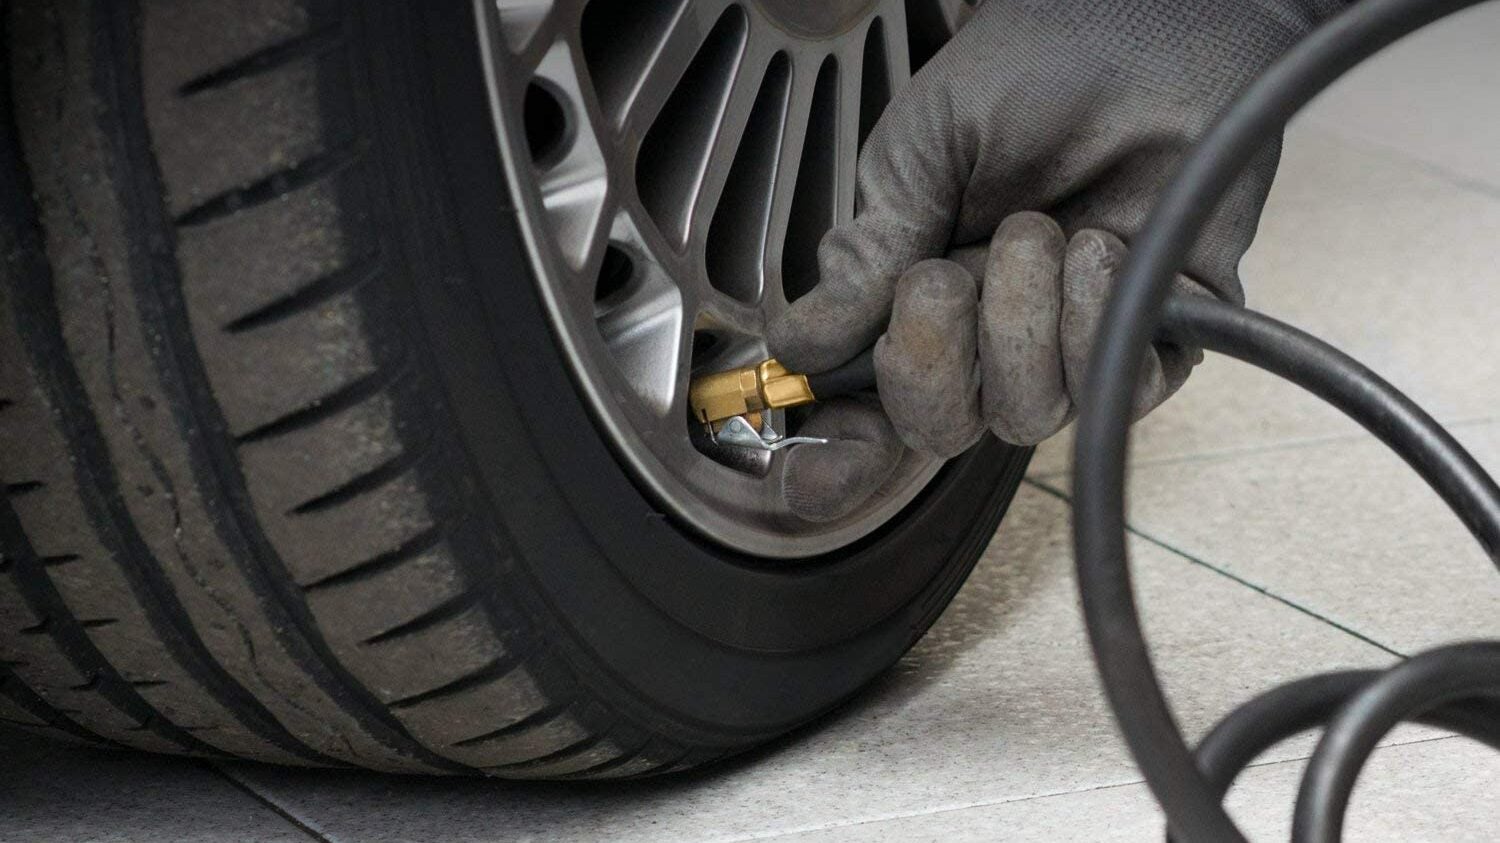 1/4" Tyre Inflator & Pressure Gauge Heavy Duty Air Line Hose Car Hand Tool 